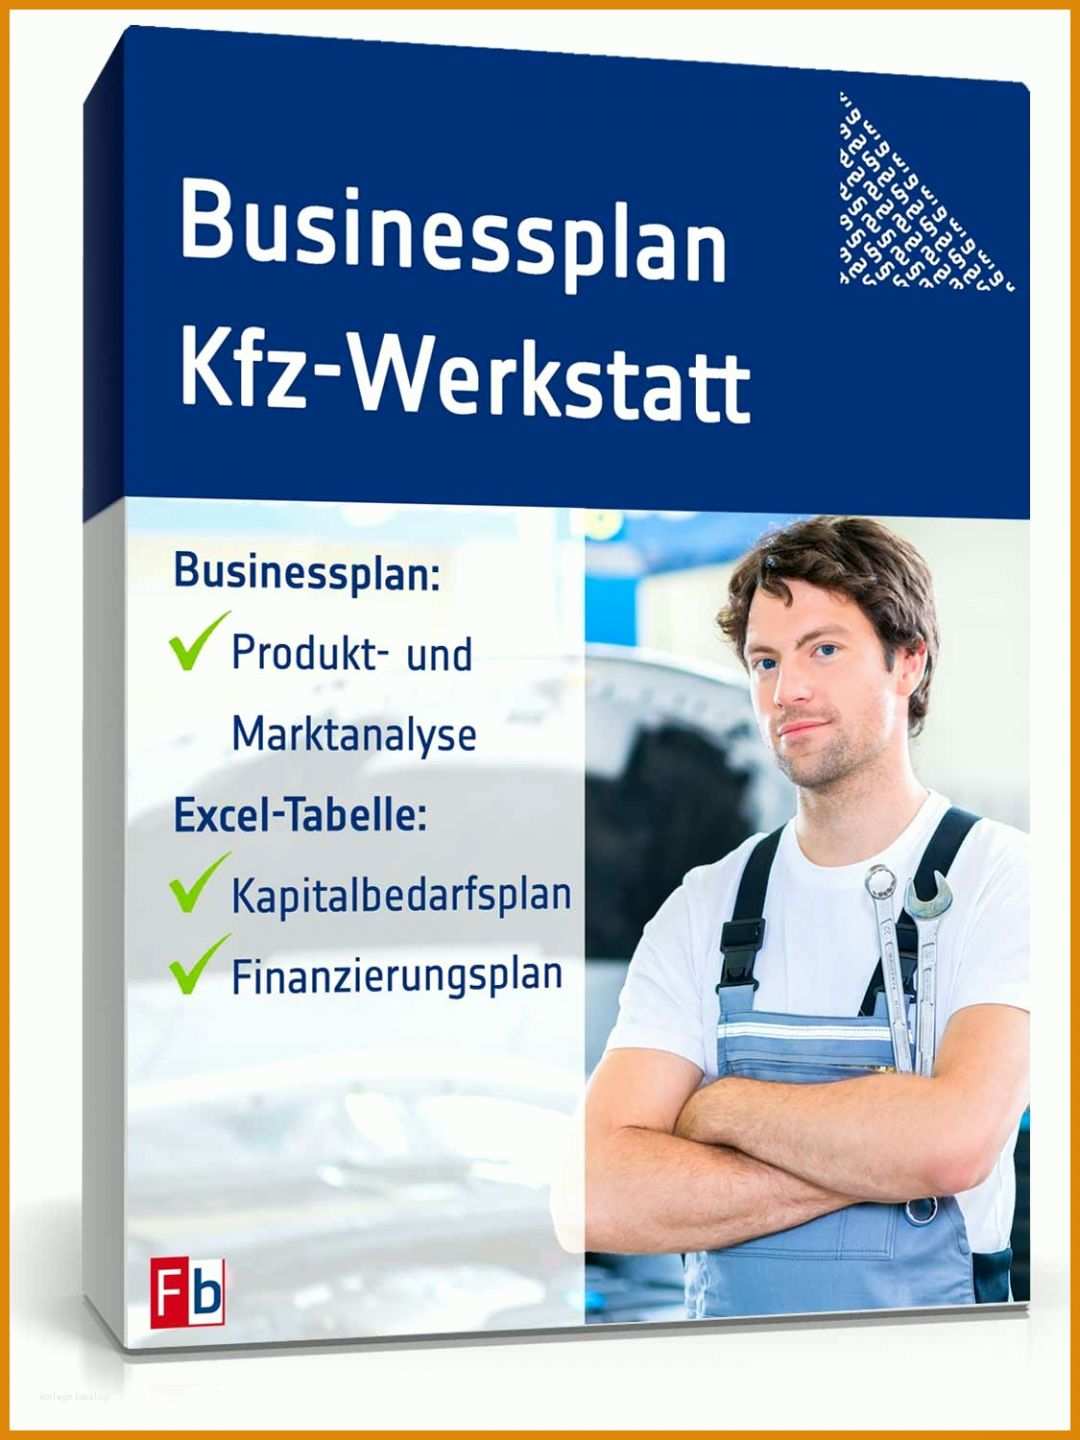 Großartig Businessplan Vorlage Für Kfz Werkstatt 1125x1500